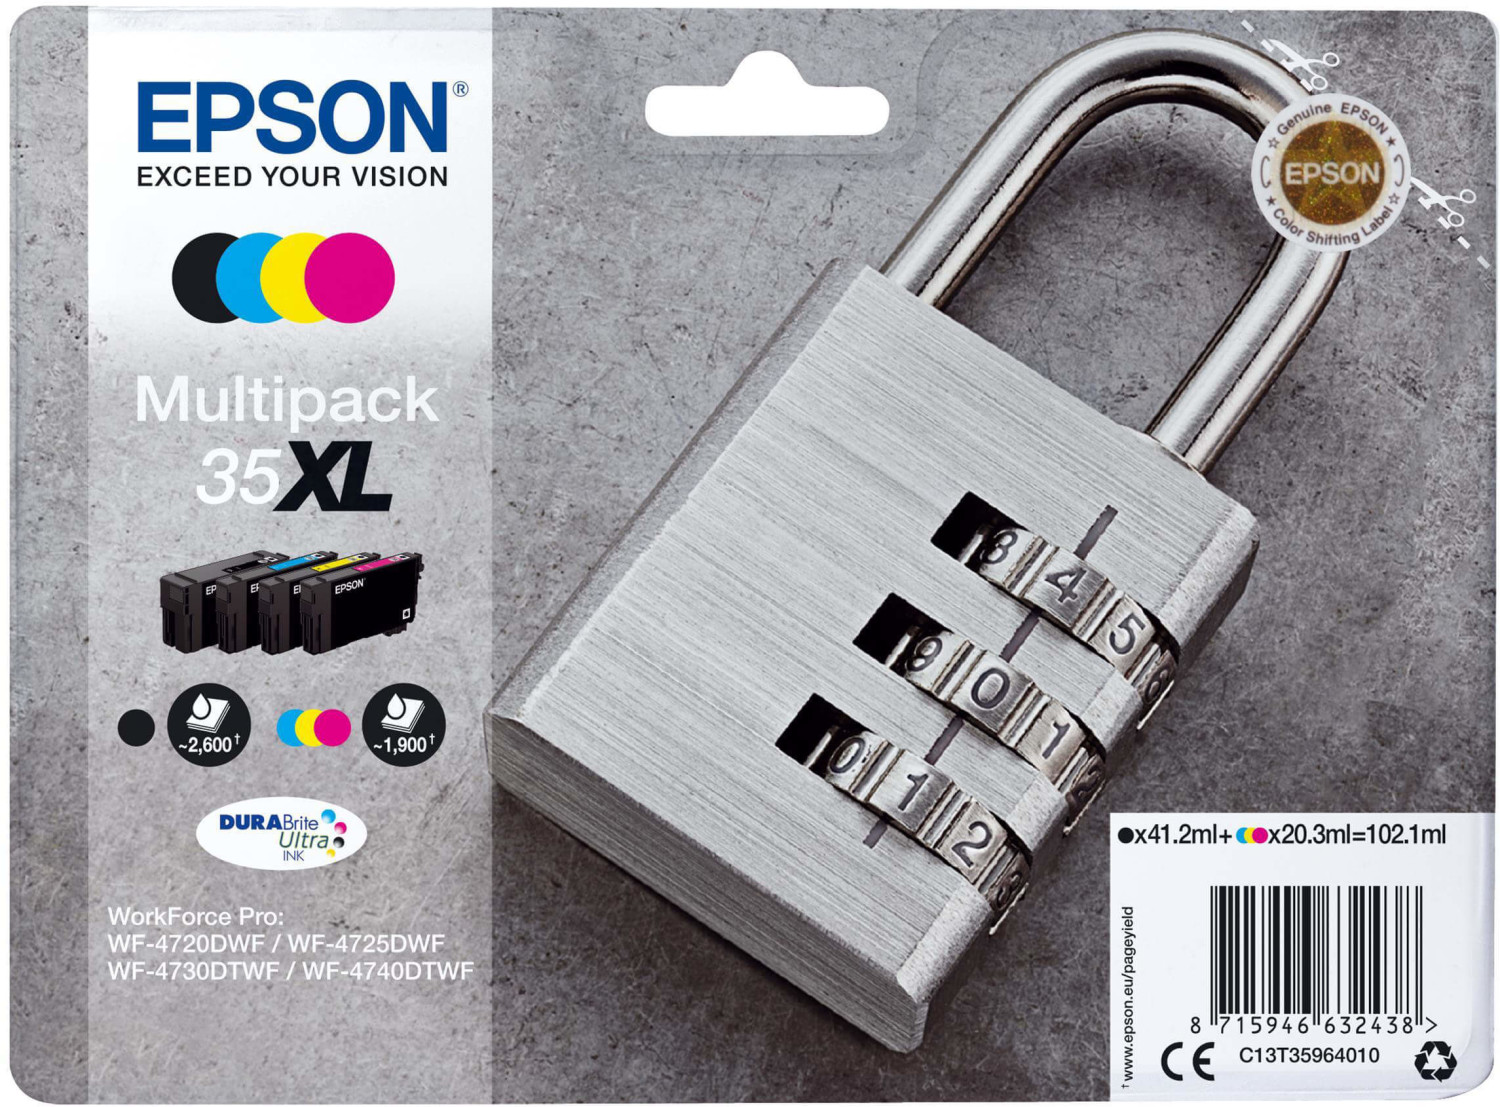 ✓ Epson Multipack 604XL 4 cartouches - (C13T10H64010) couleur